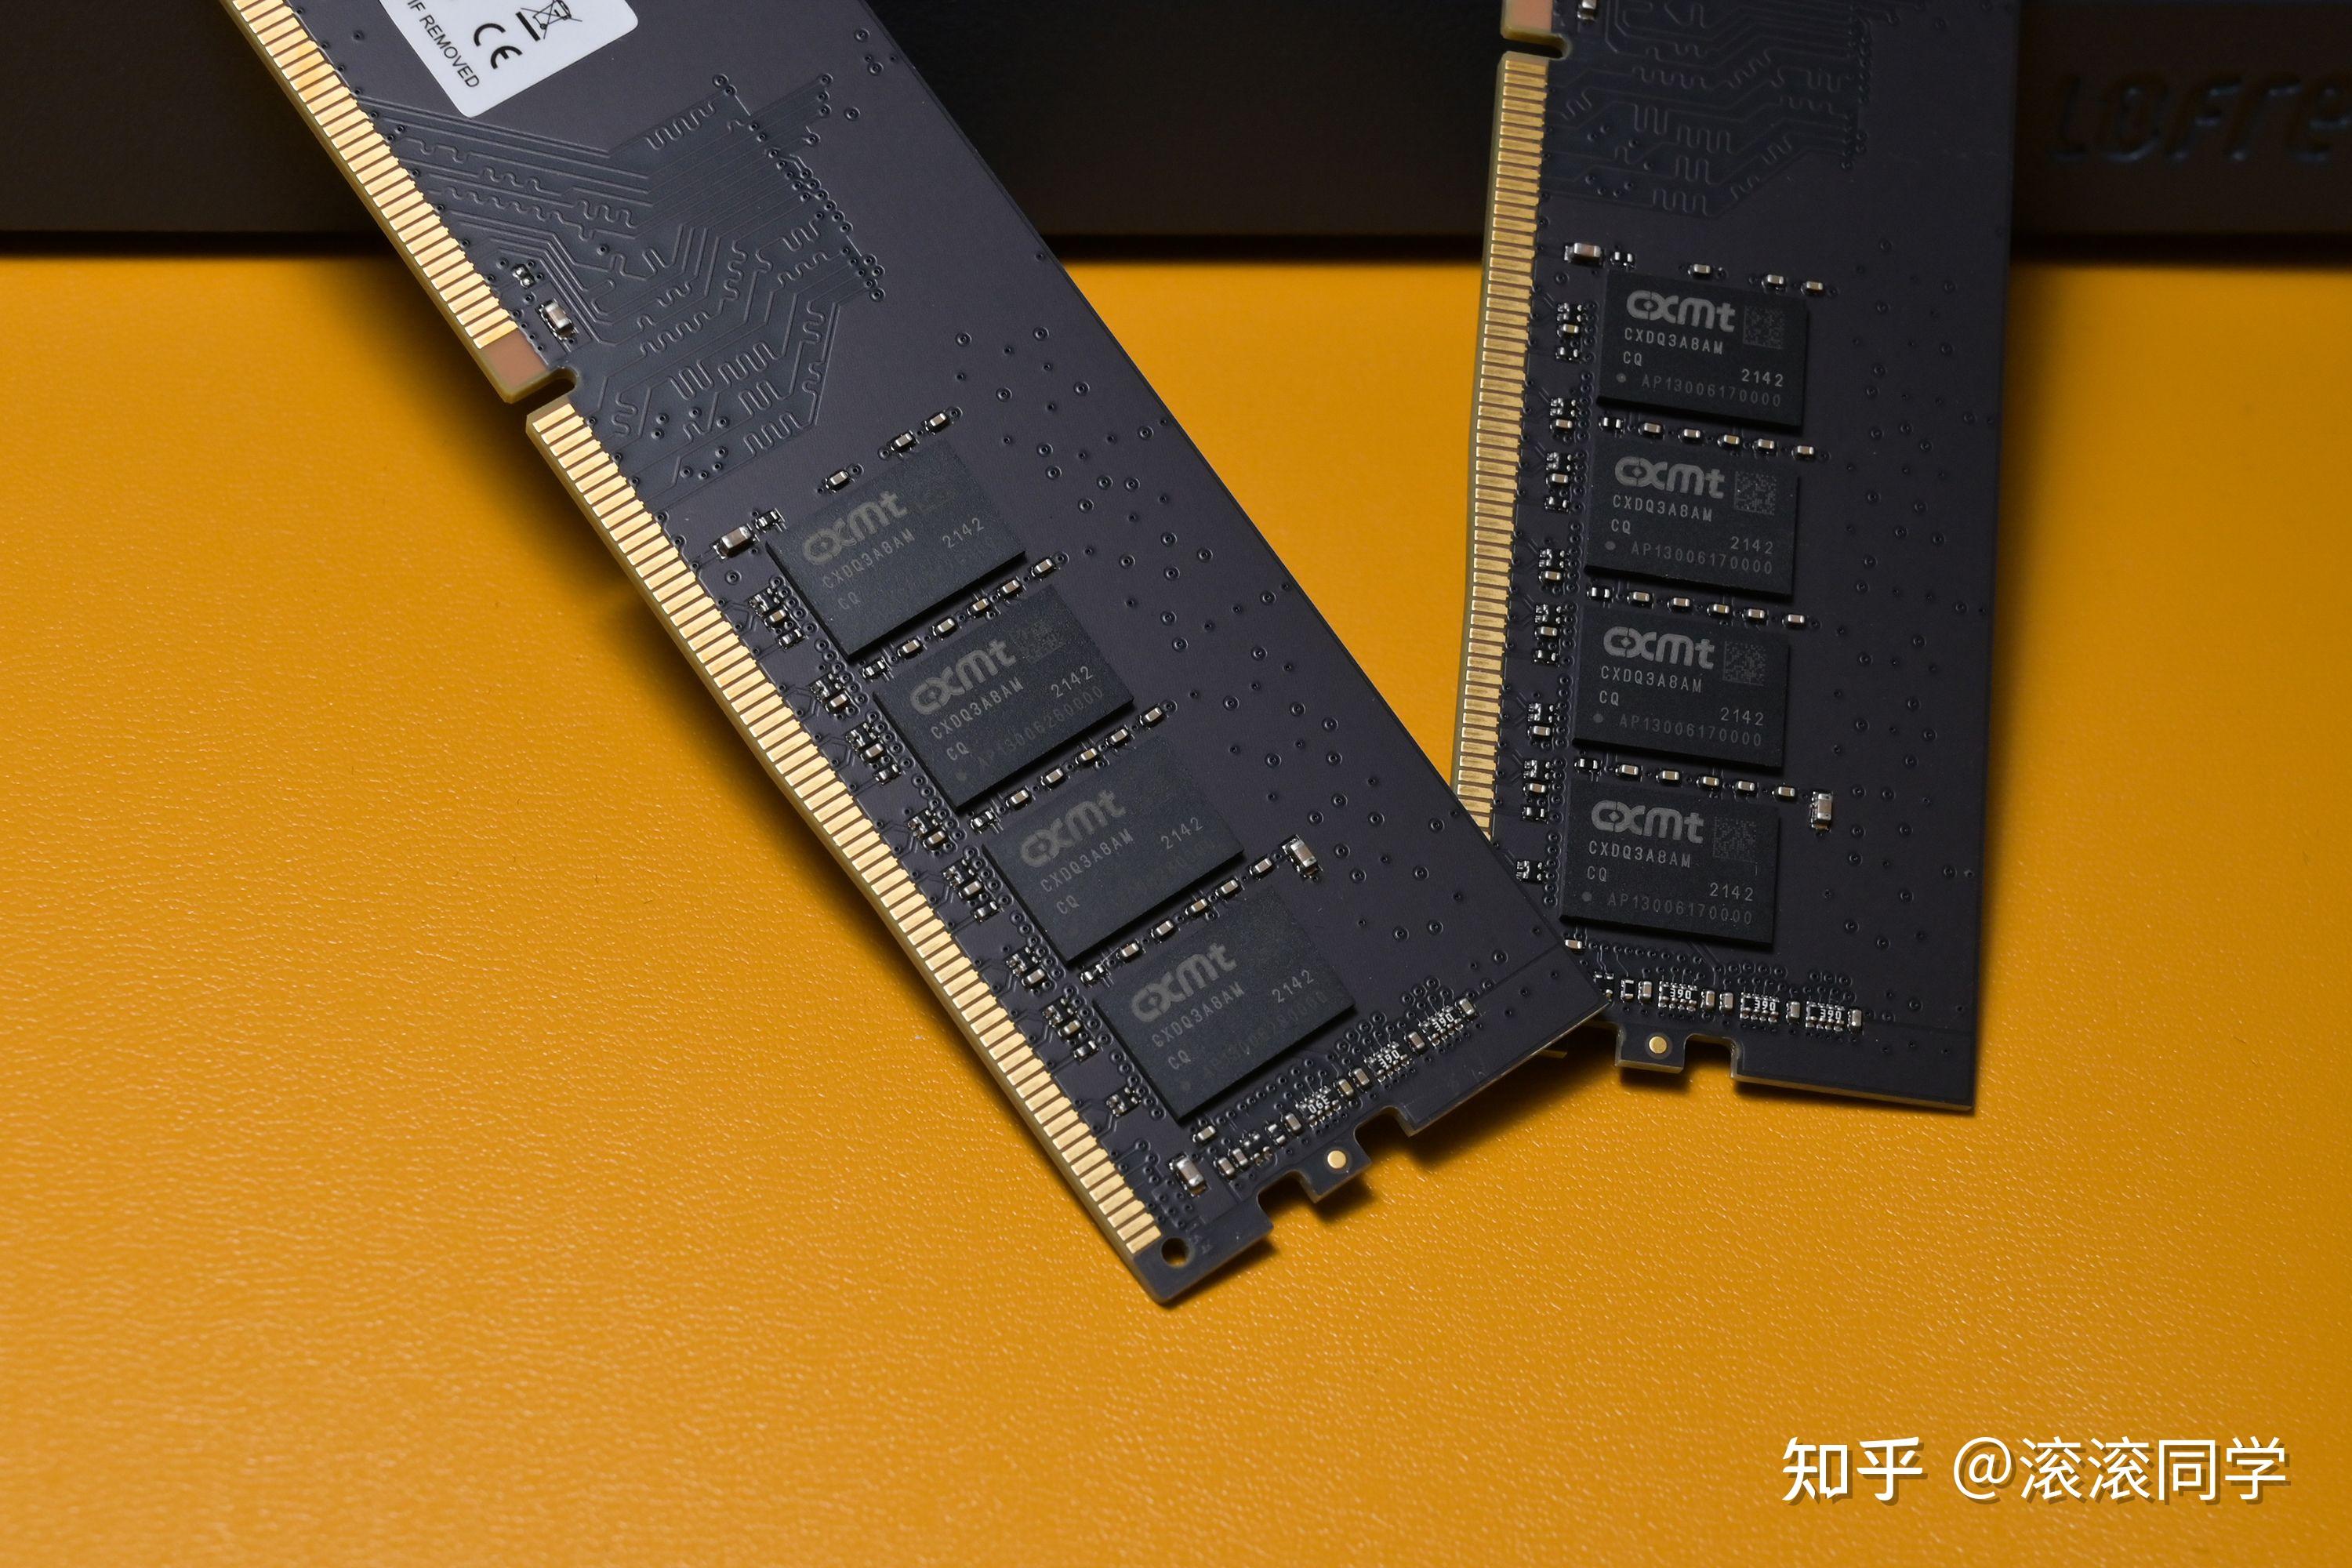 锐龙不兼容 DDR4 内存，是技术限制还是市场策略？  第6张